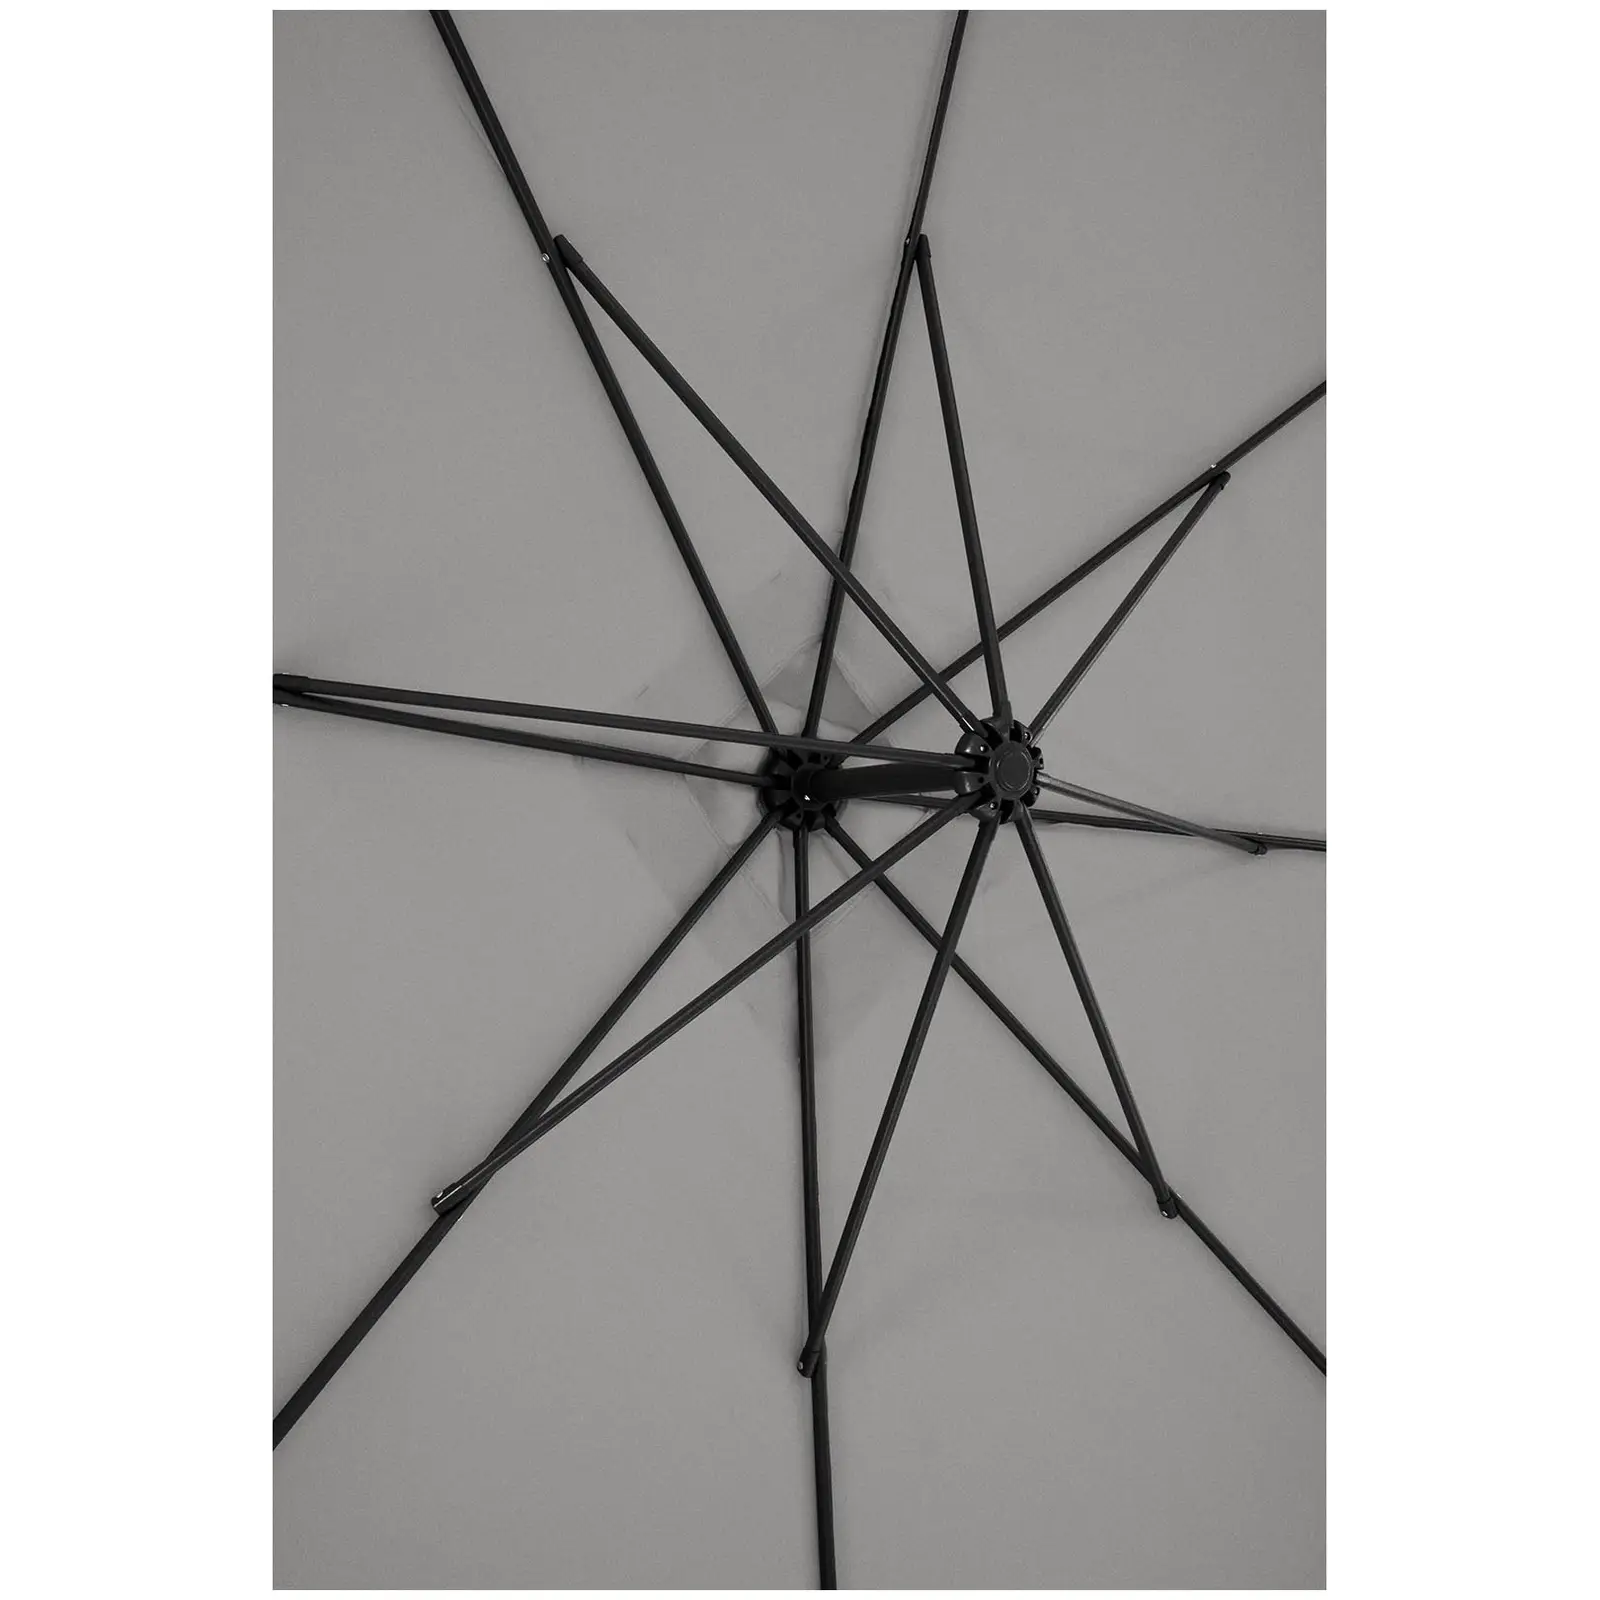 B-varer Hengeparasoll - mørkegrå - rektangulær - 250 x 250 cm - kan skråstilles